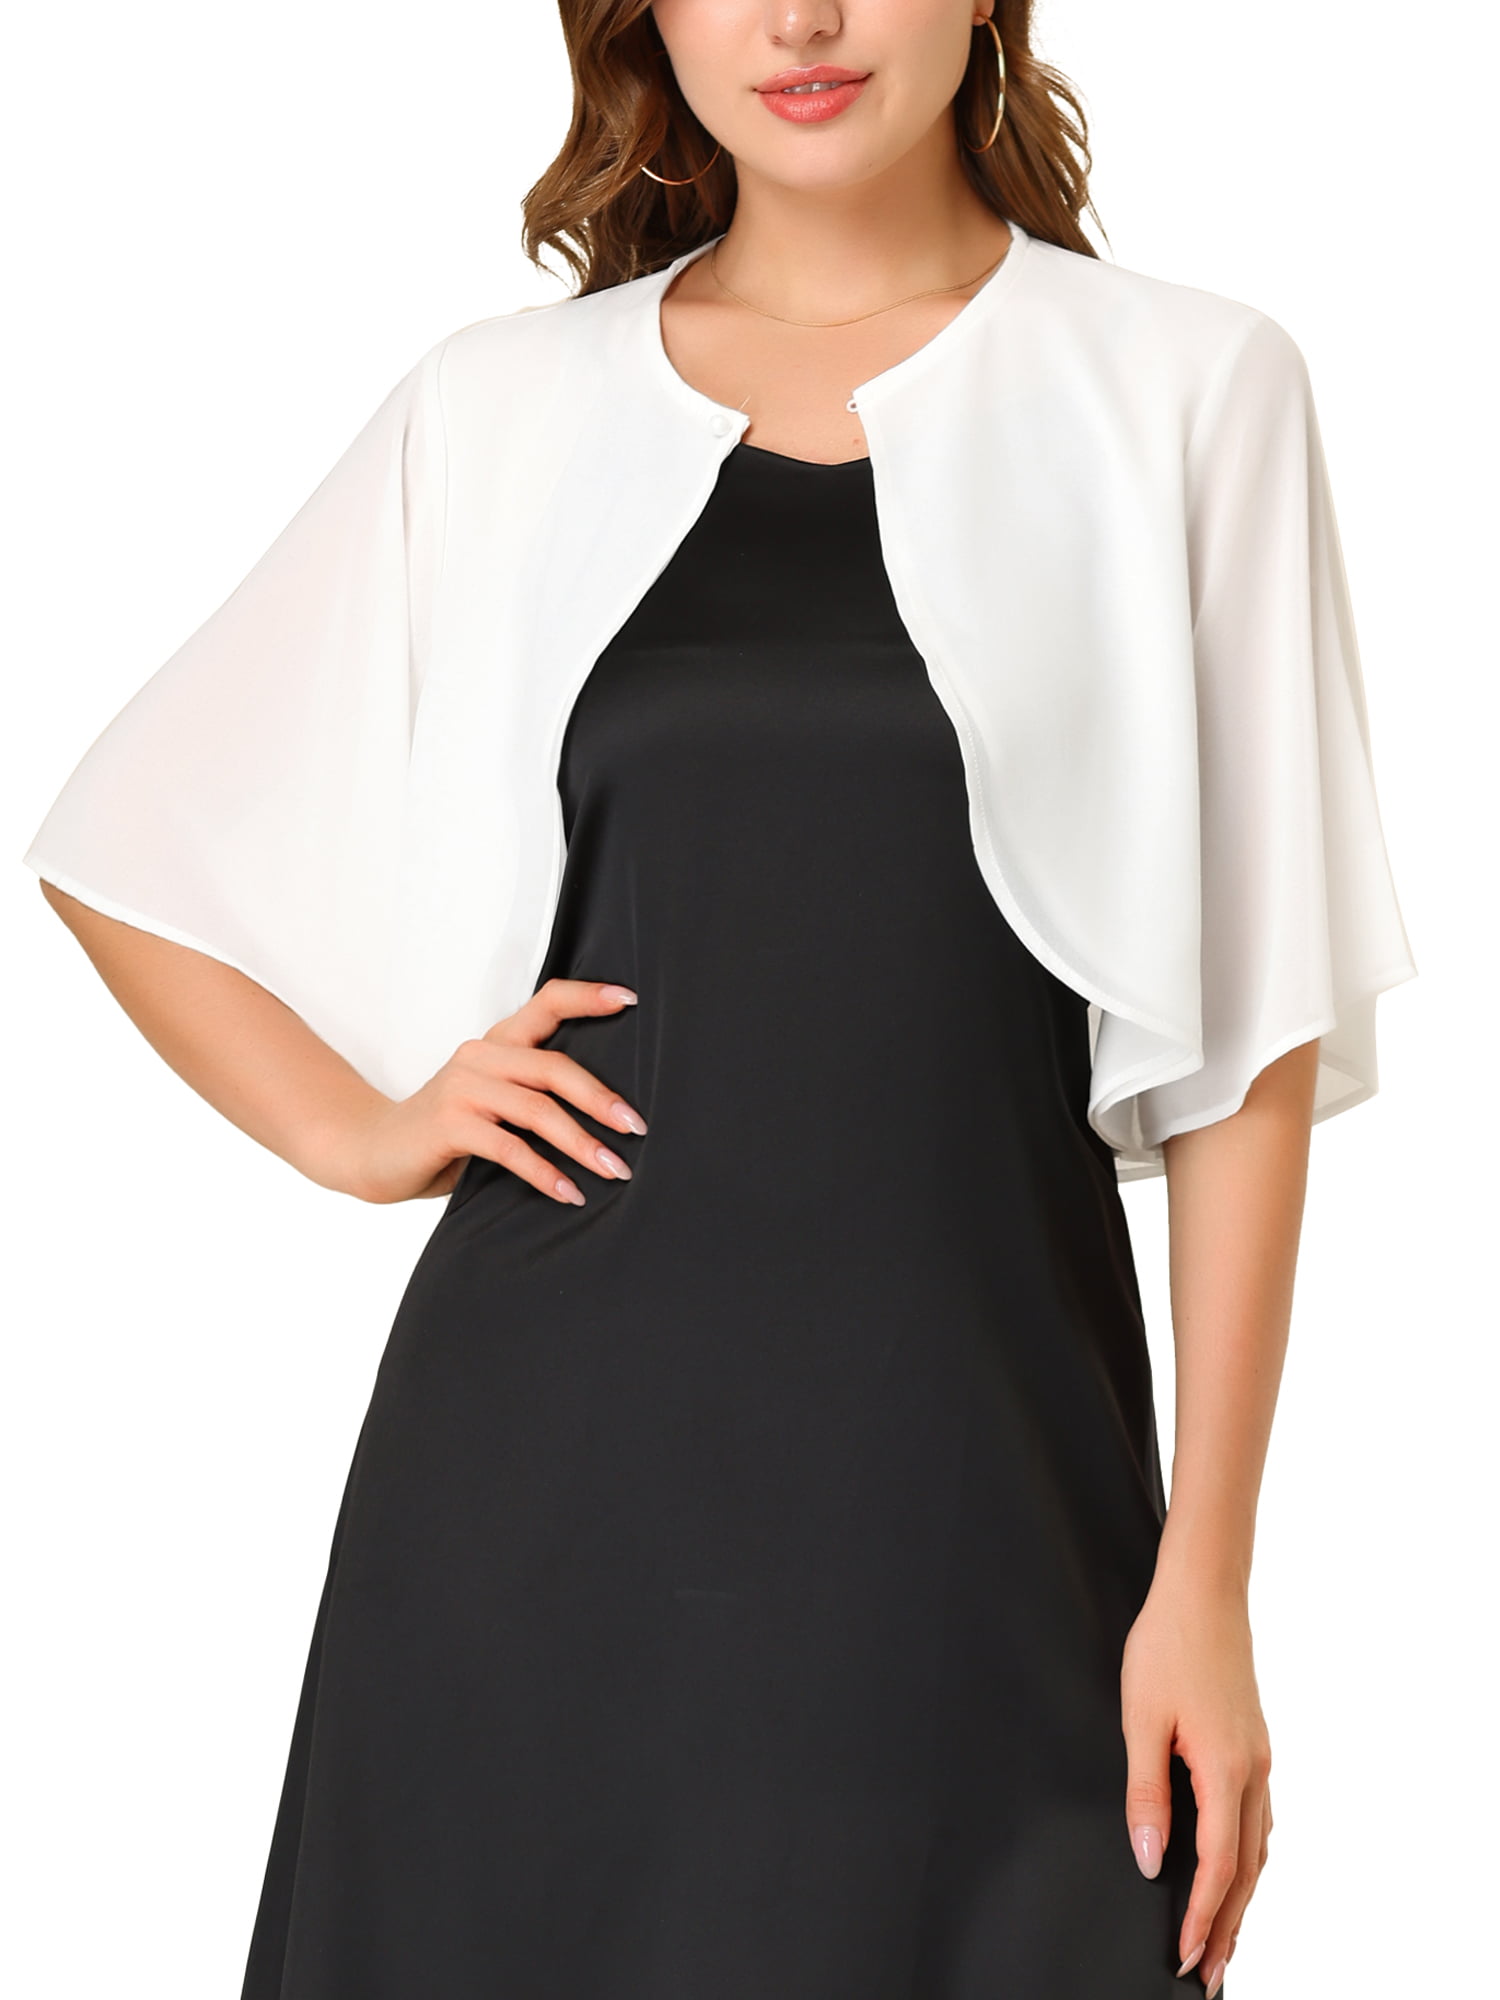 K Women's Short Sleeve Crop Cardigan Sheer Chiffon Top - Walmart.com